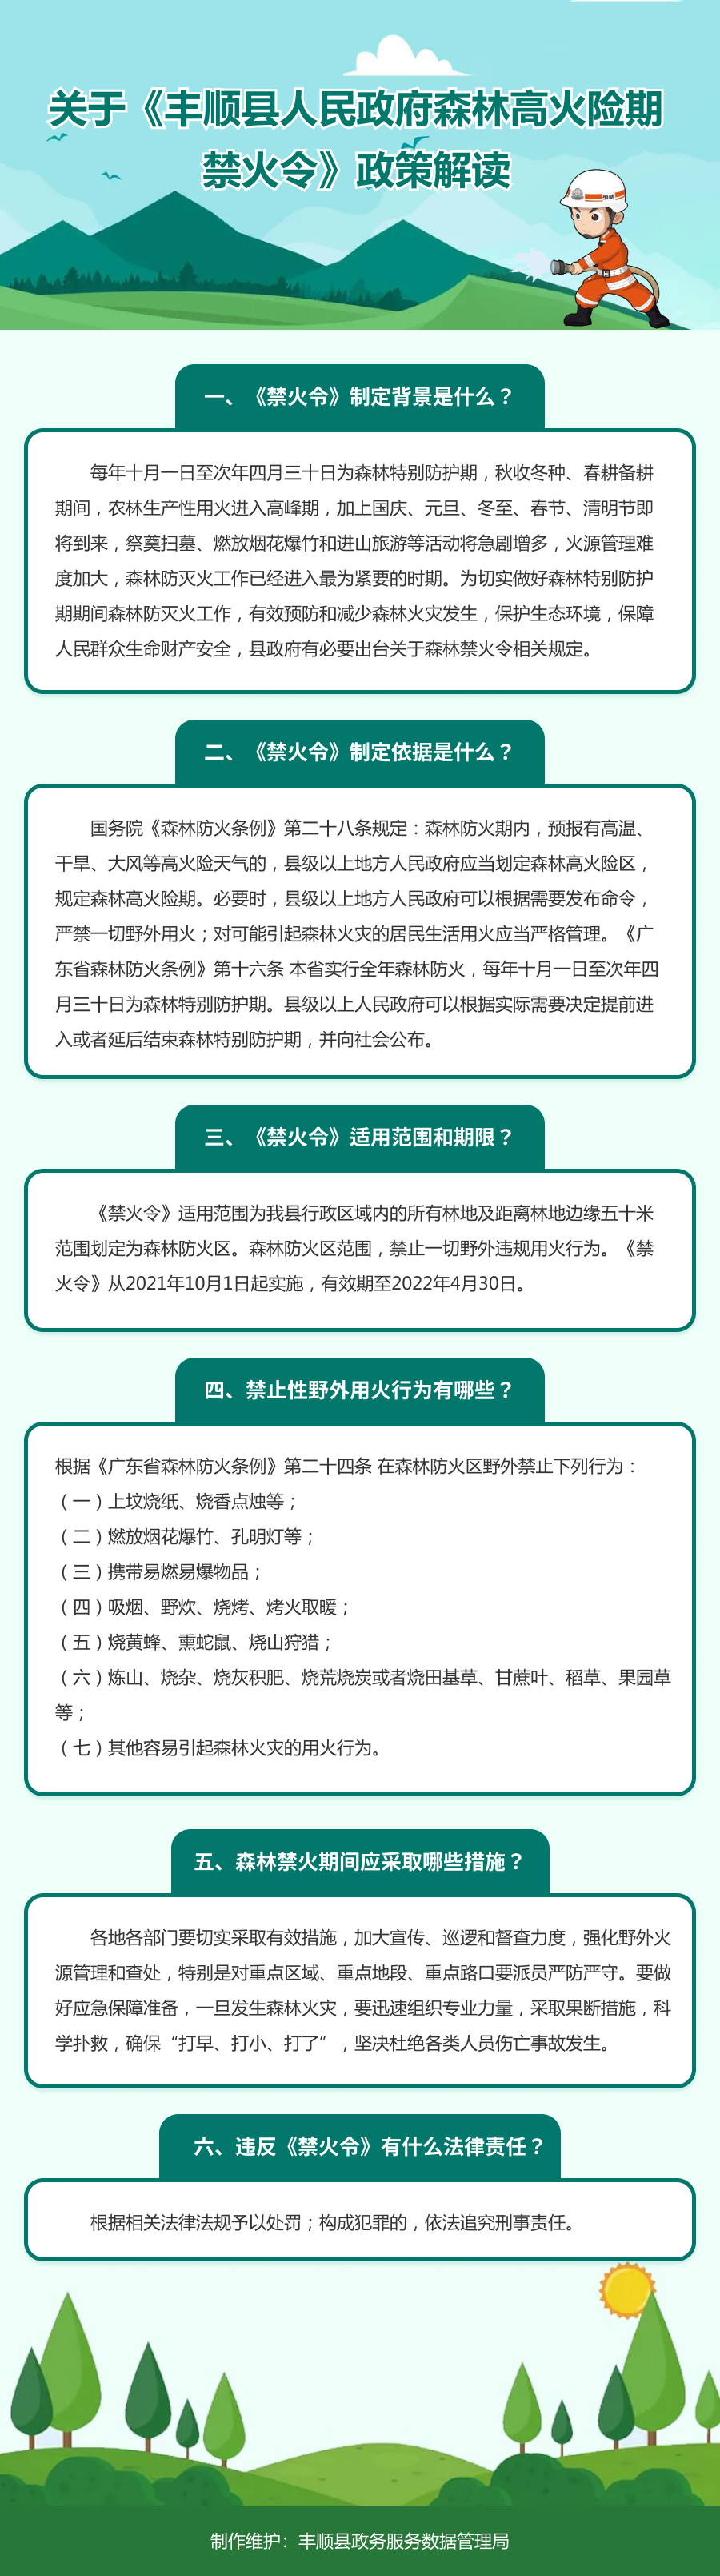 关于《丰顺县人民政府森林高火险期禁火令》政策解读.png